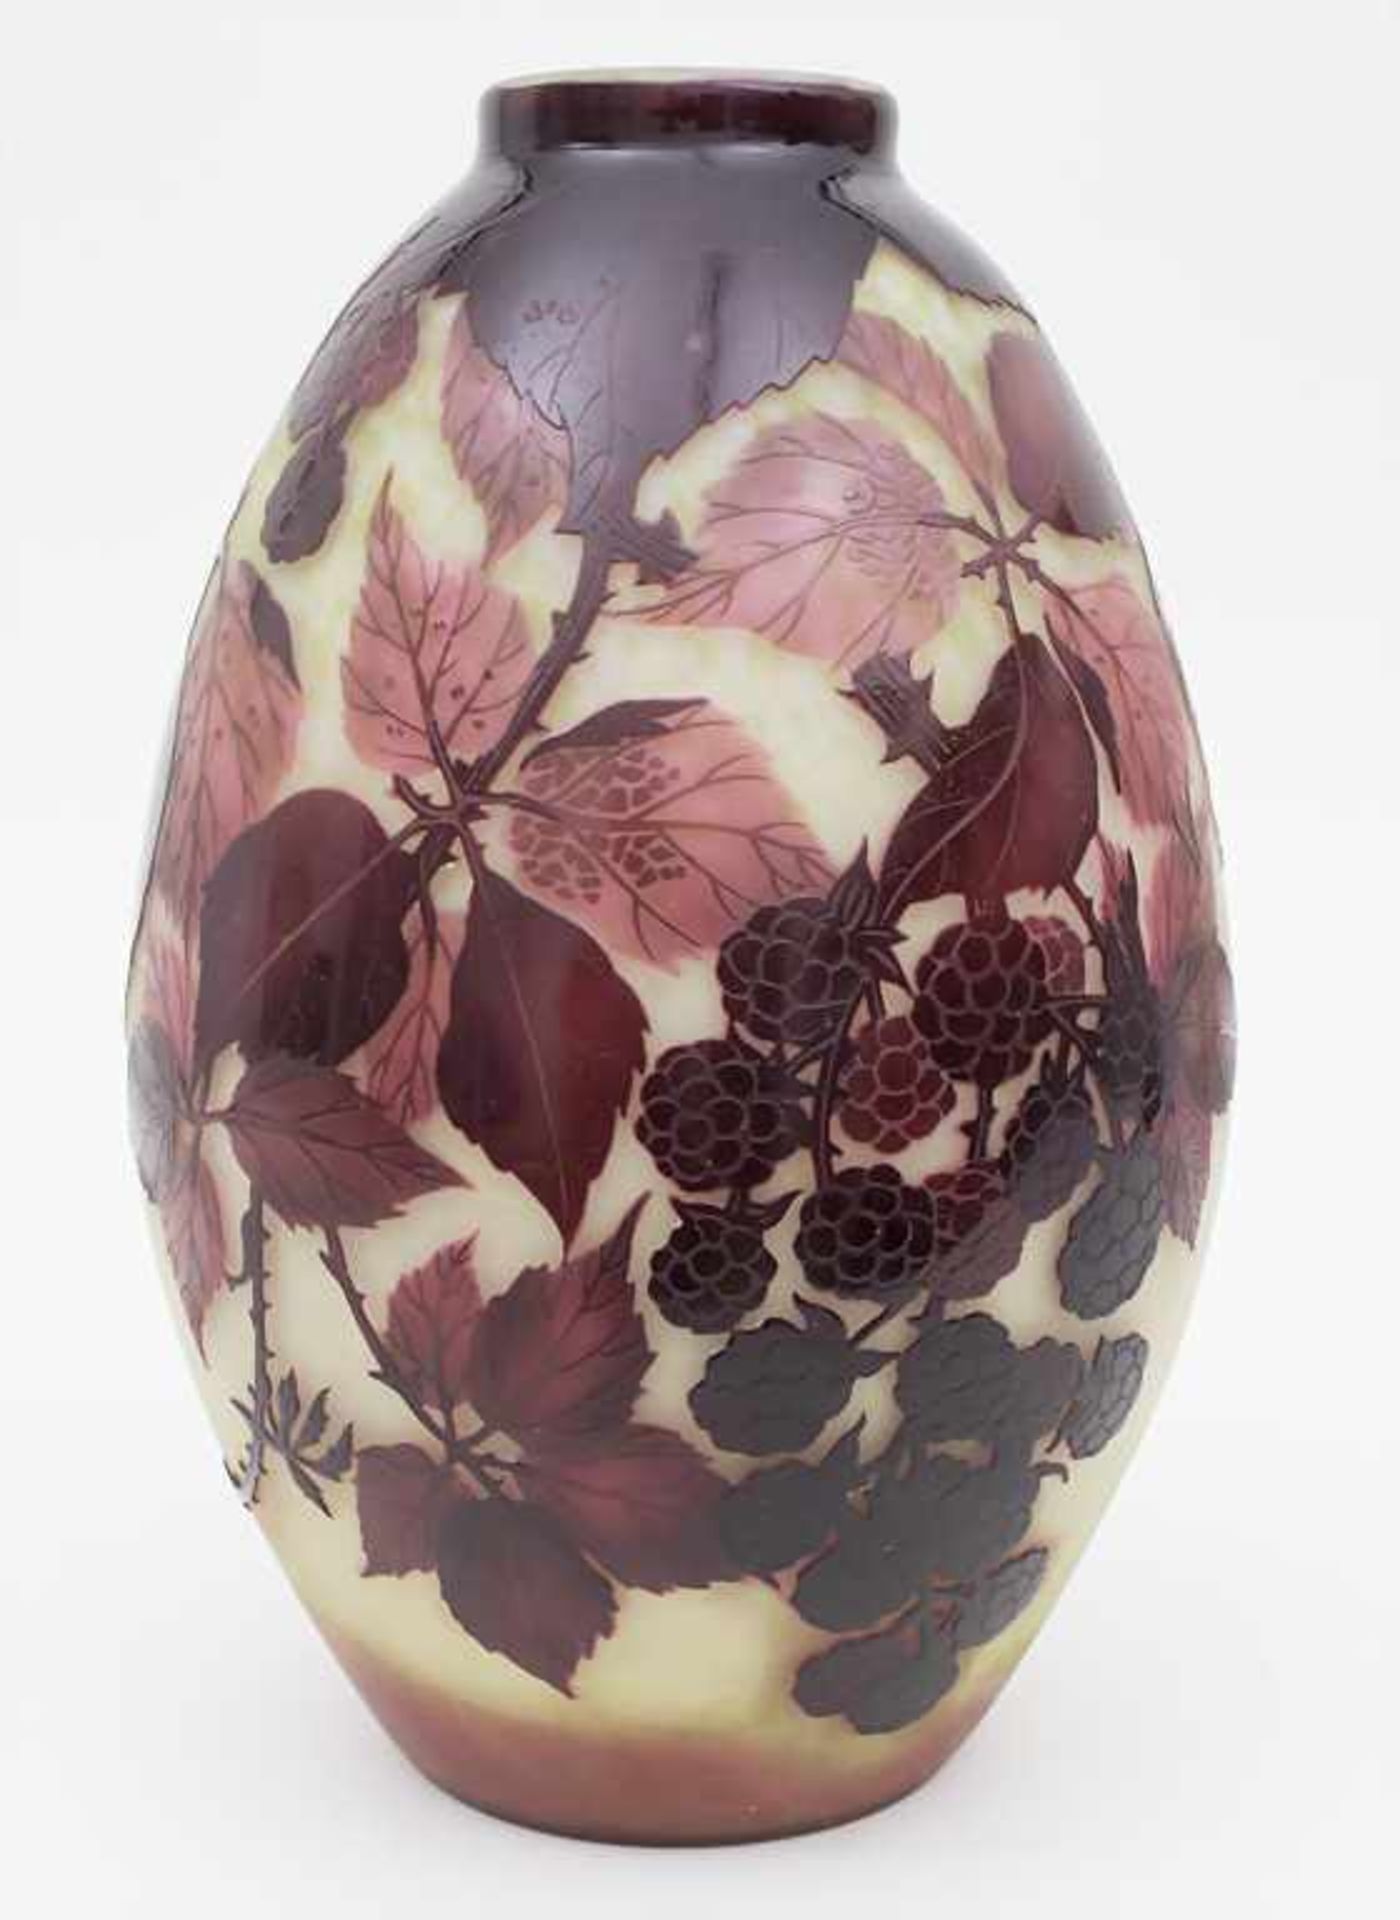 Vase mit Brombeerdekor / Vase with Blackberry Decoration, A. Delatte, NancyMaterial: Schichtglas,